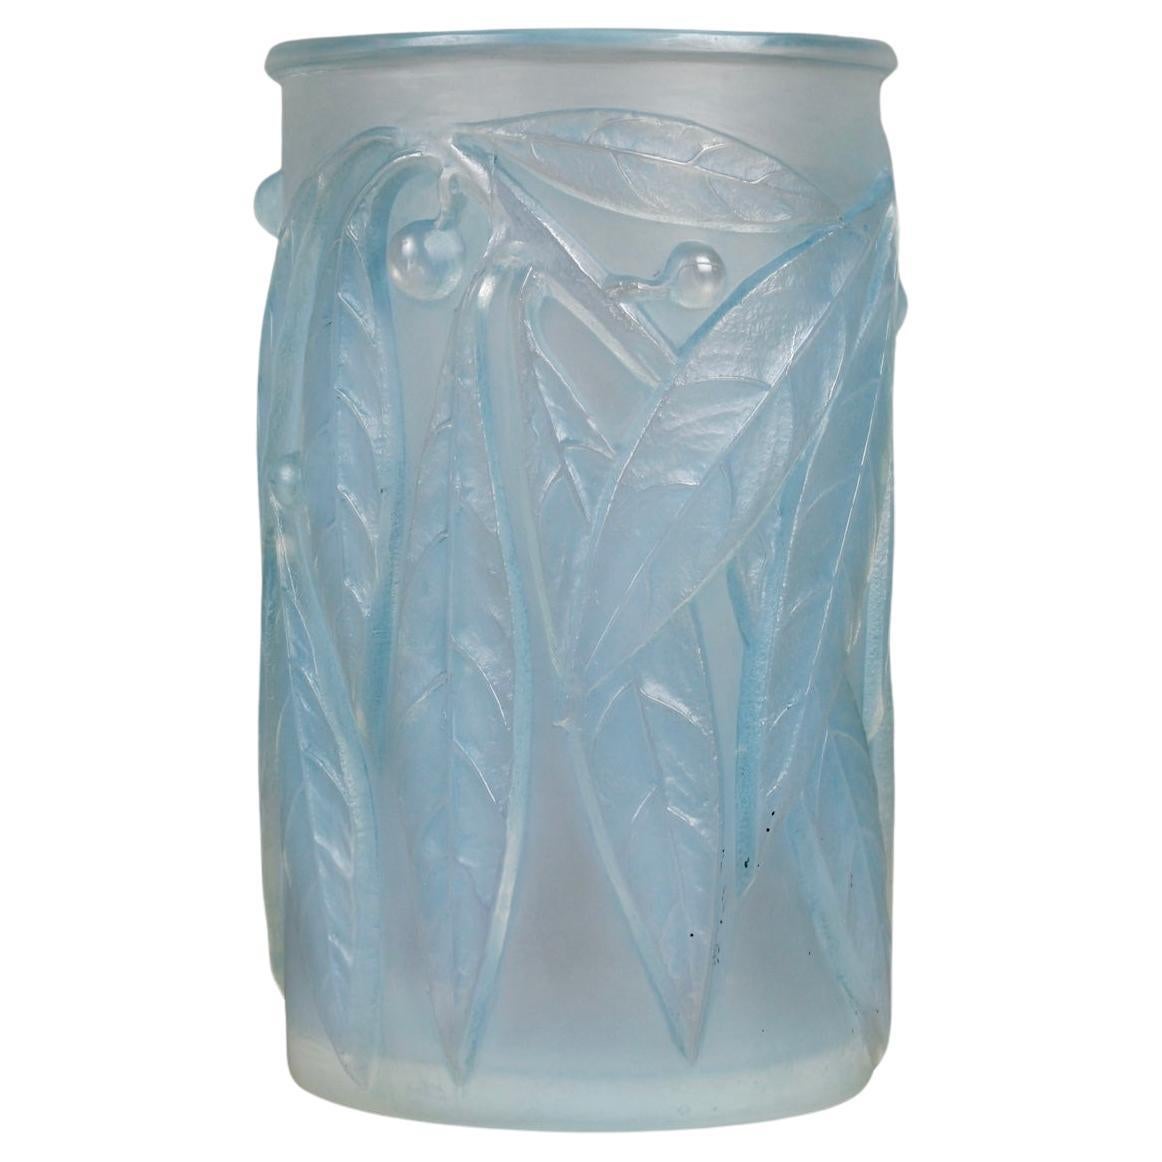 1922 René Lalique - Vase Laurier Opalescent Glass with Blue Patina